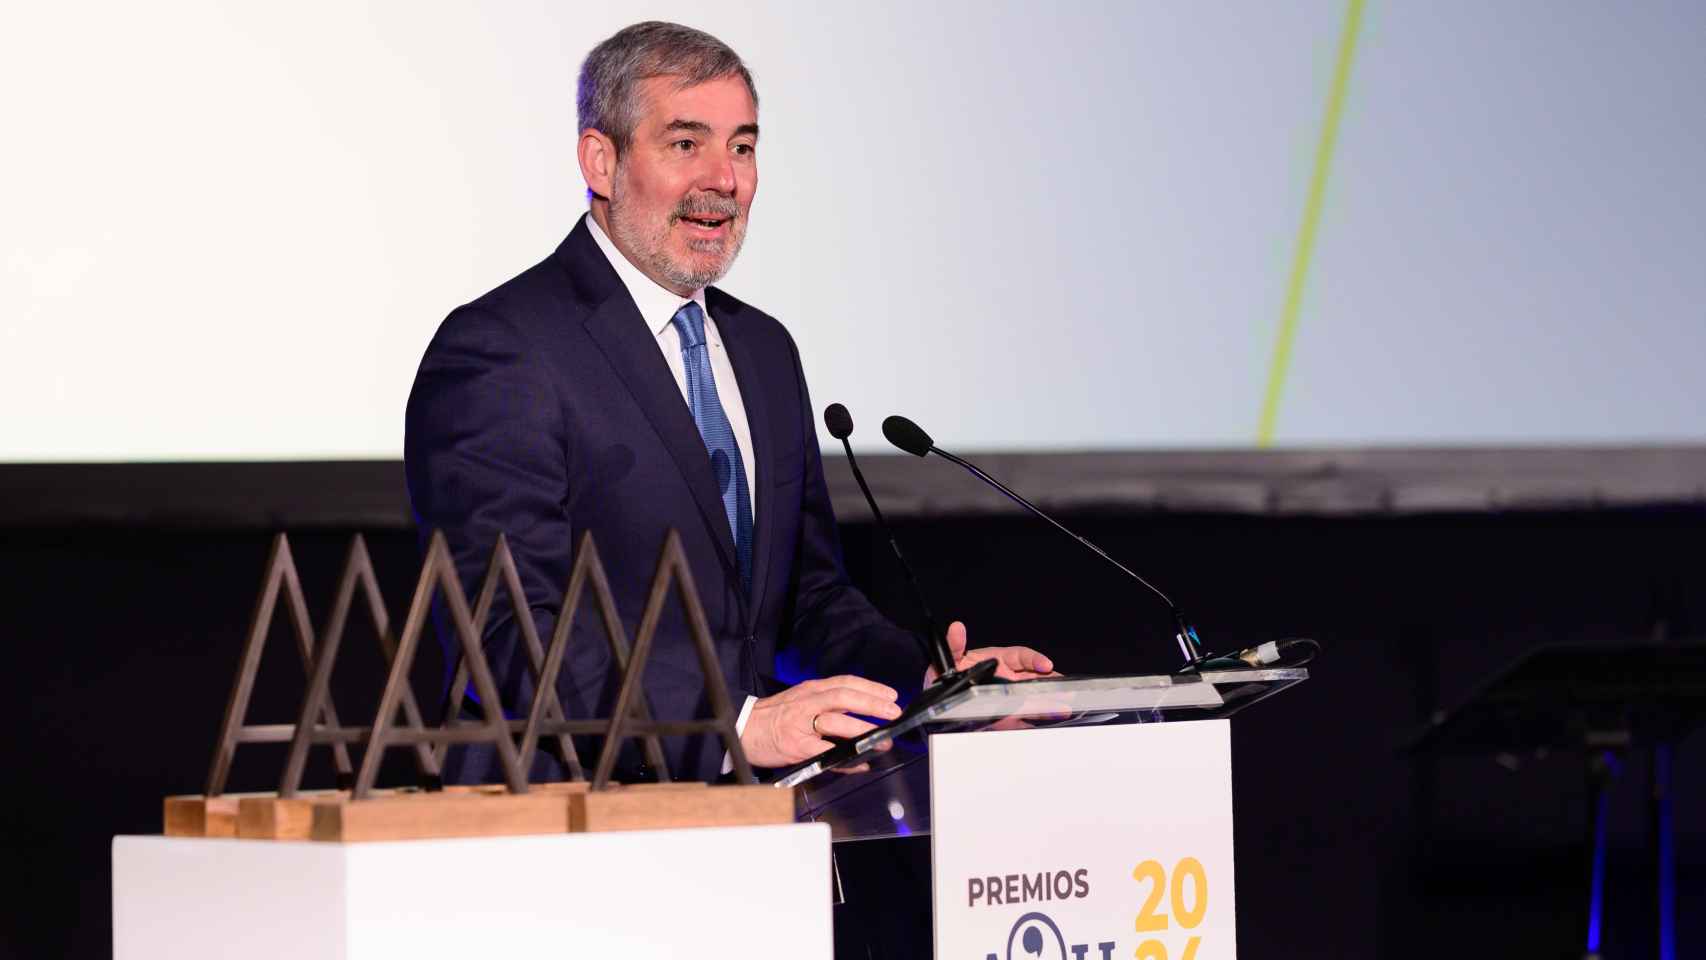 Fernando Clavijo, presidente de Canarias, interviene en la I Edición de los premios de Atlántico Hoy.